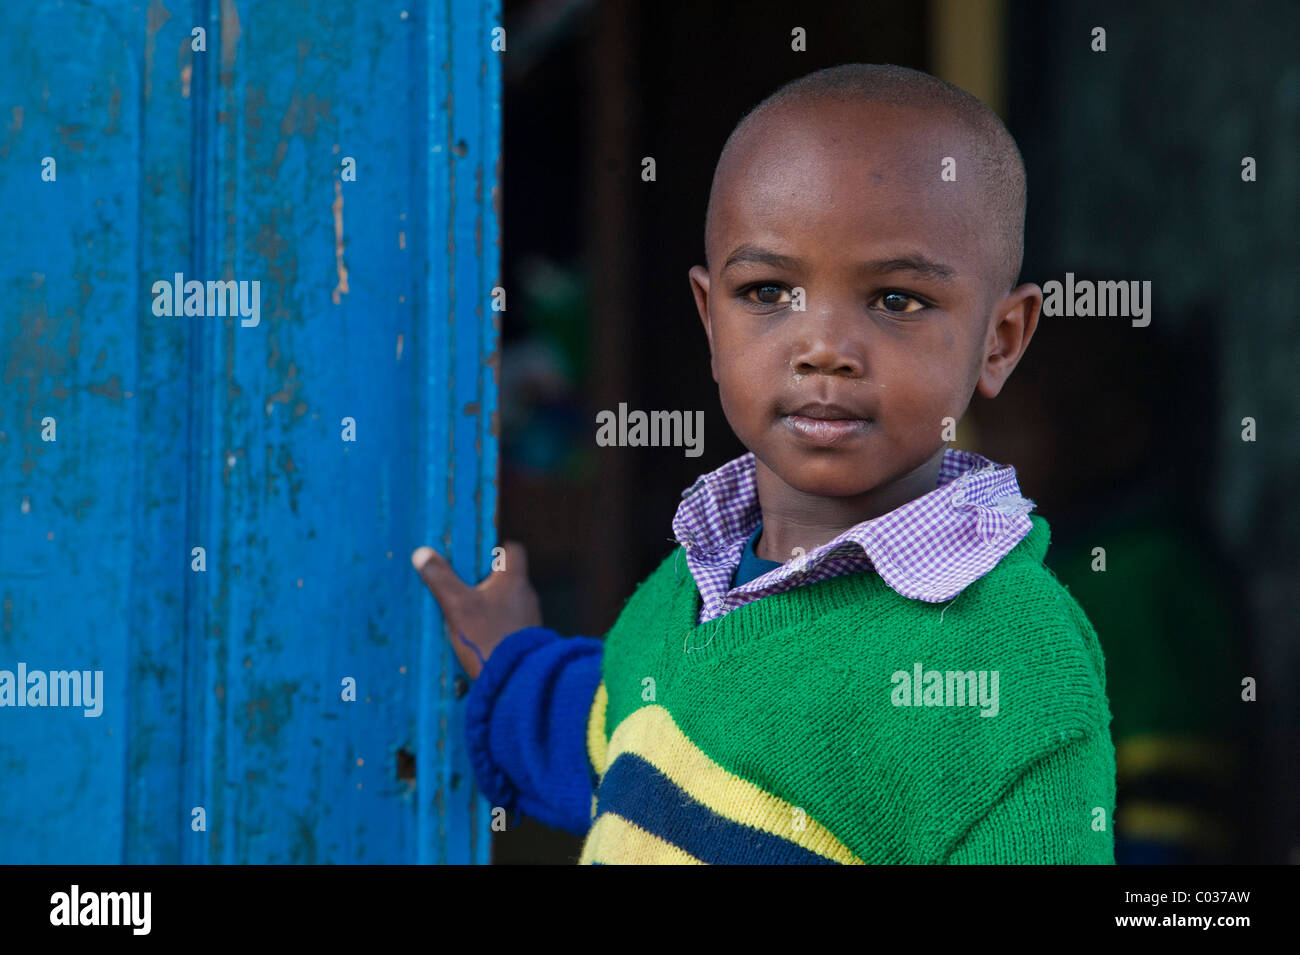 Garçon, 4-5 ans, l'enfant africain, portrait, Tanzania, Africa Banque D'Images